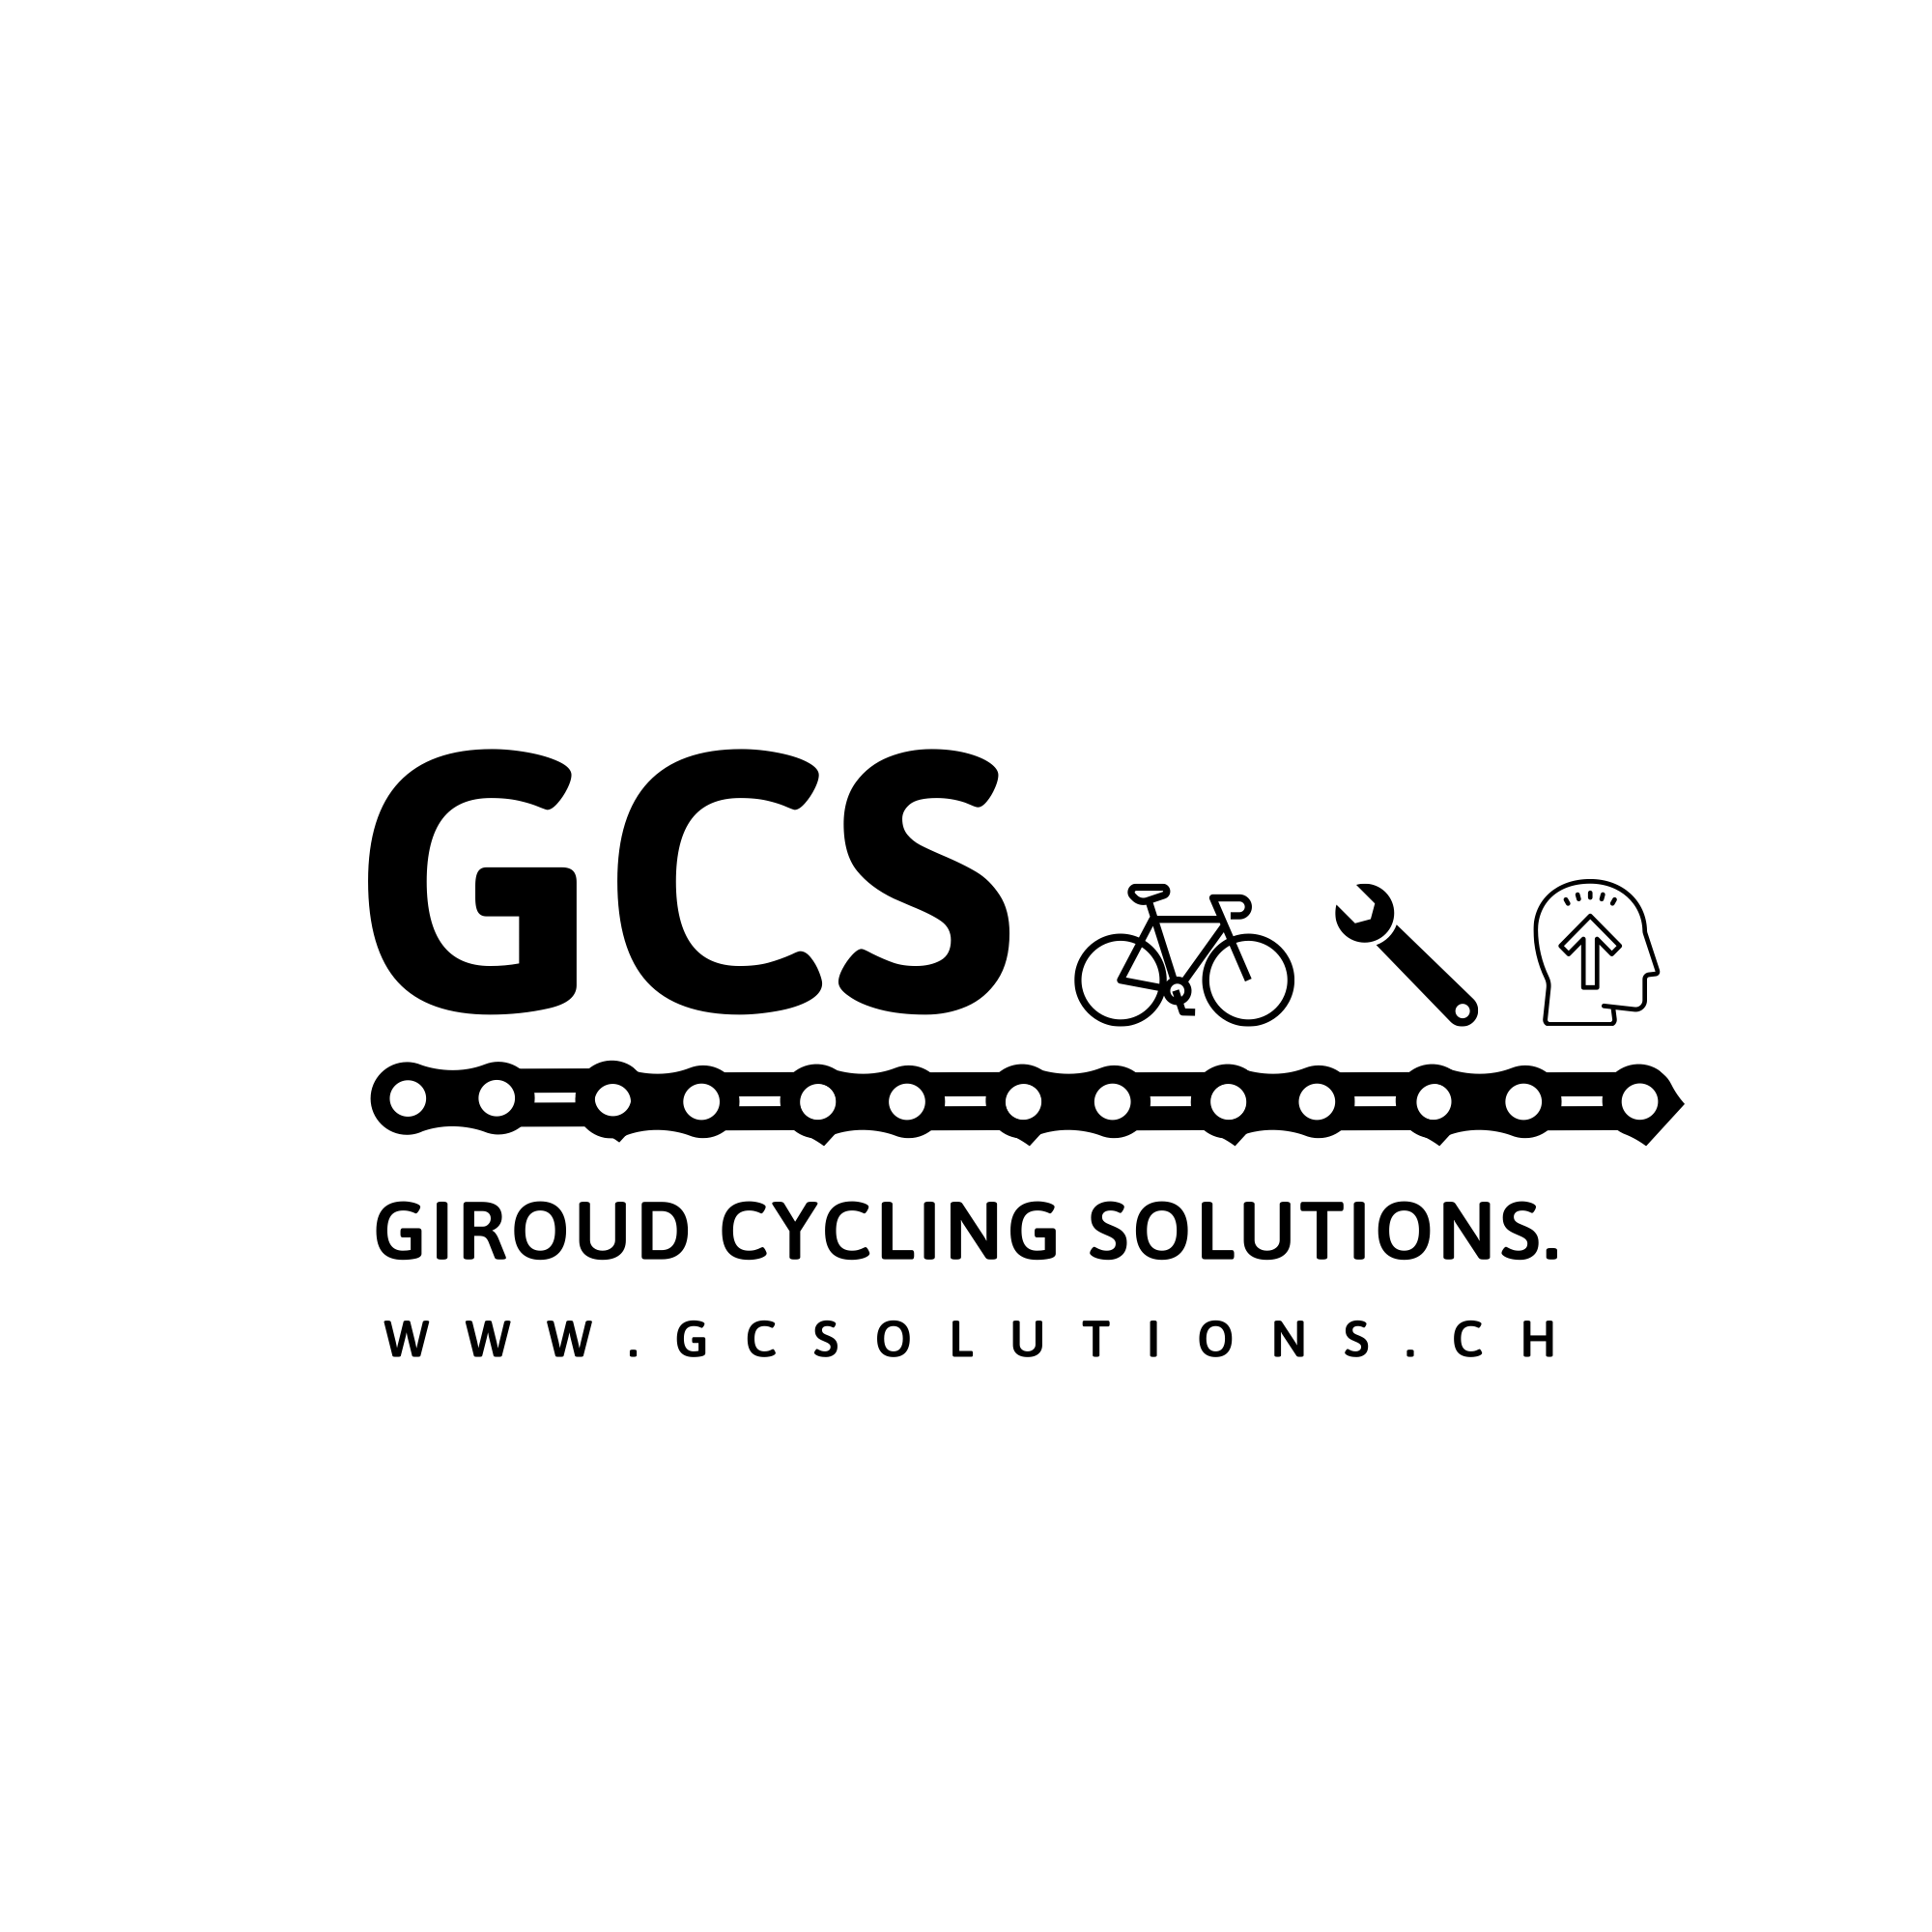 Giroud Cycling Solutions